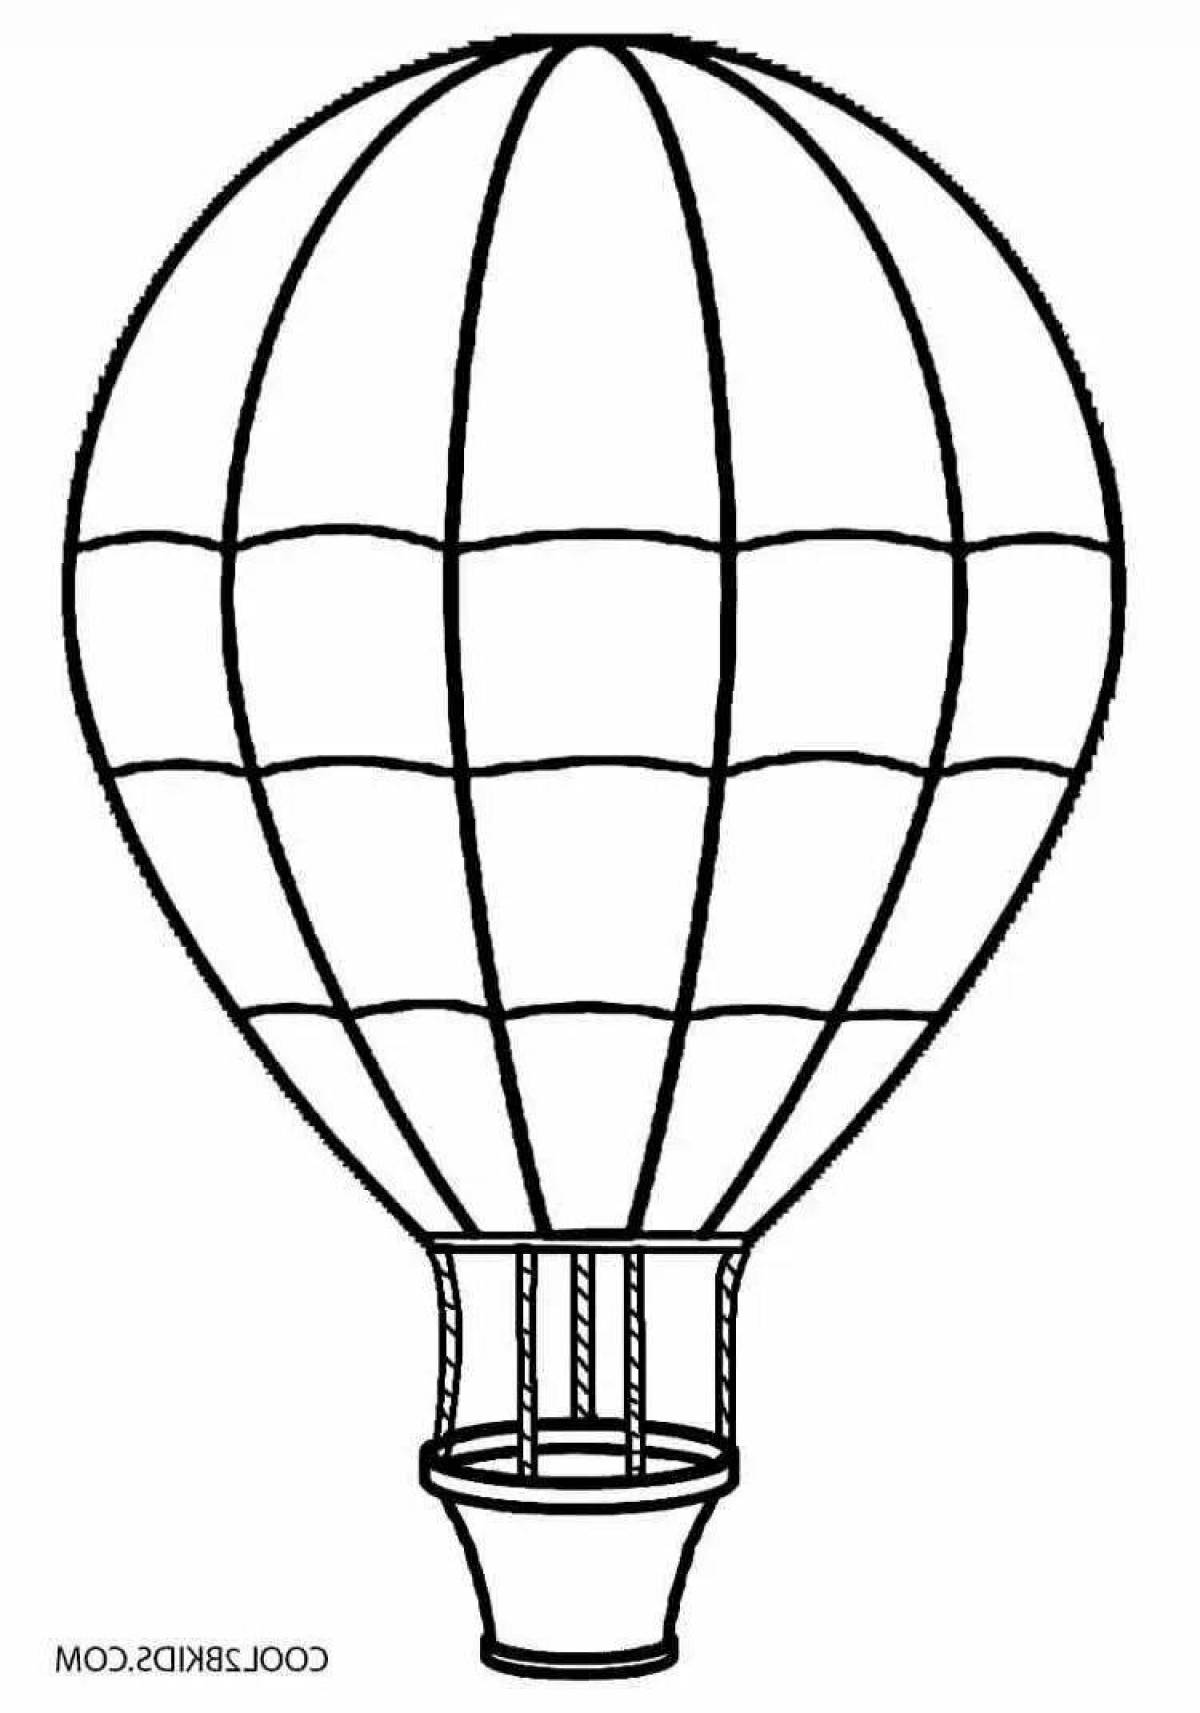 Динамический рисунок воздушного шара